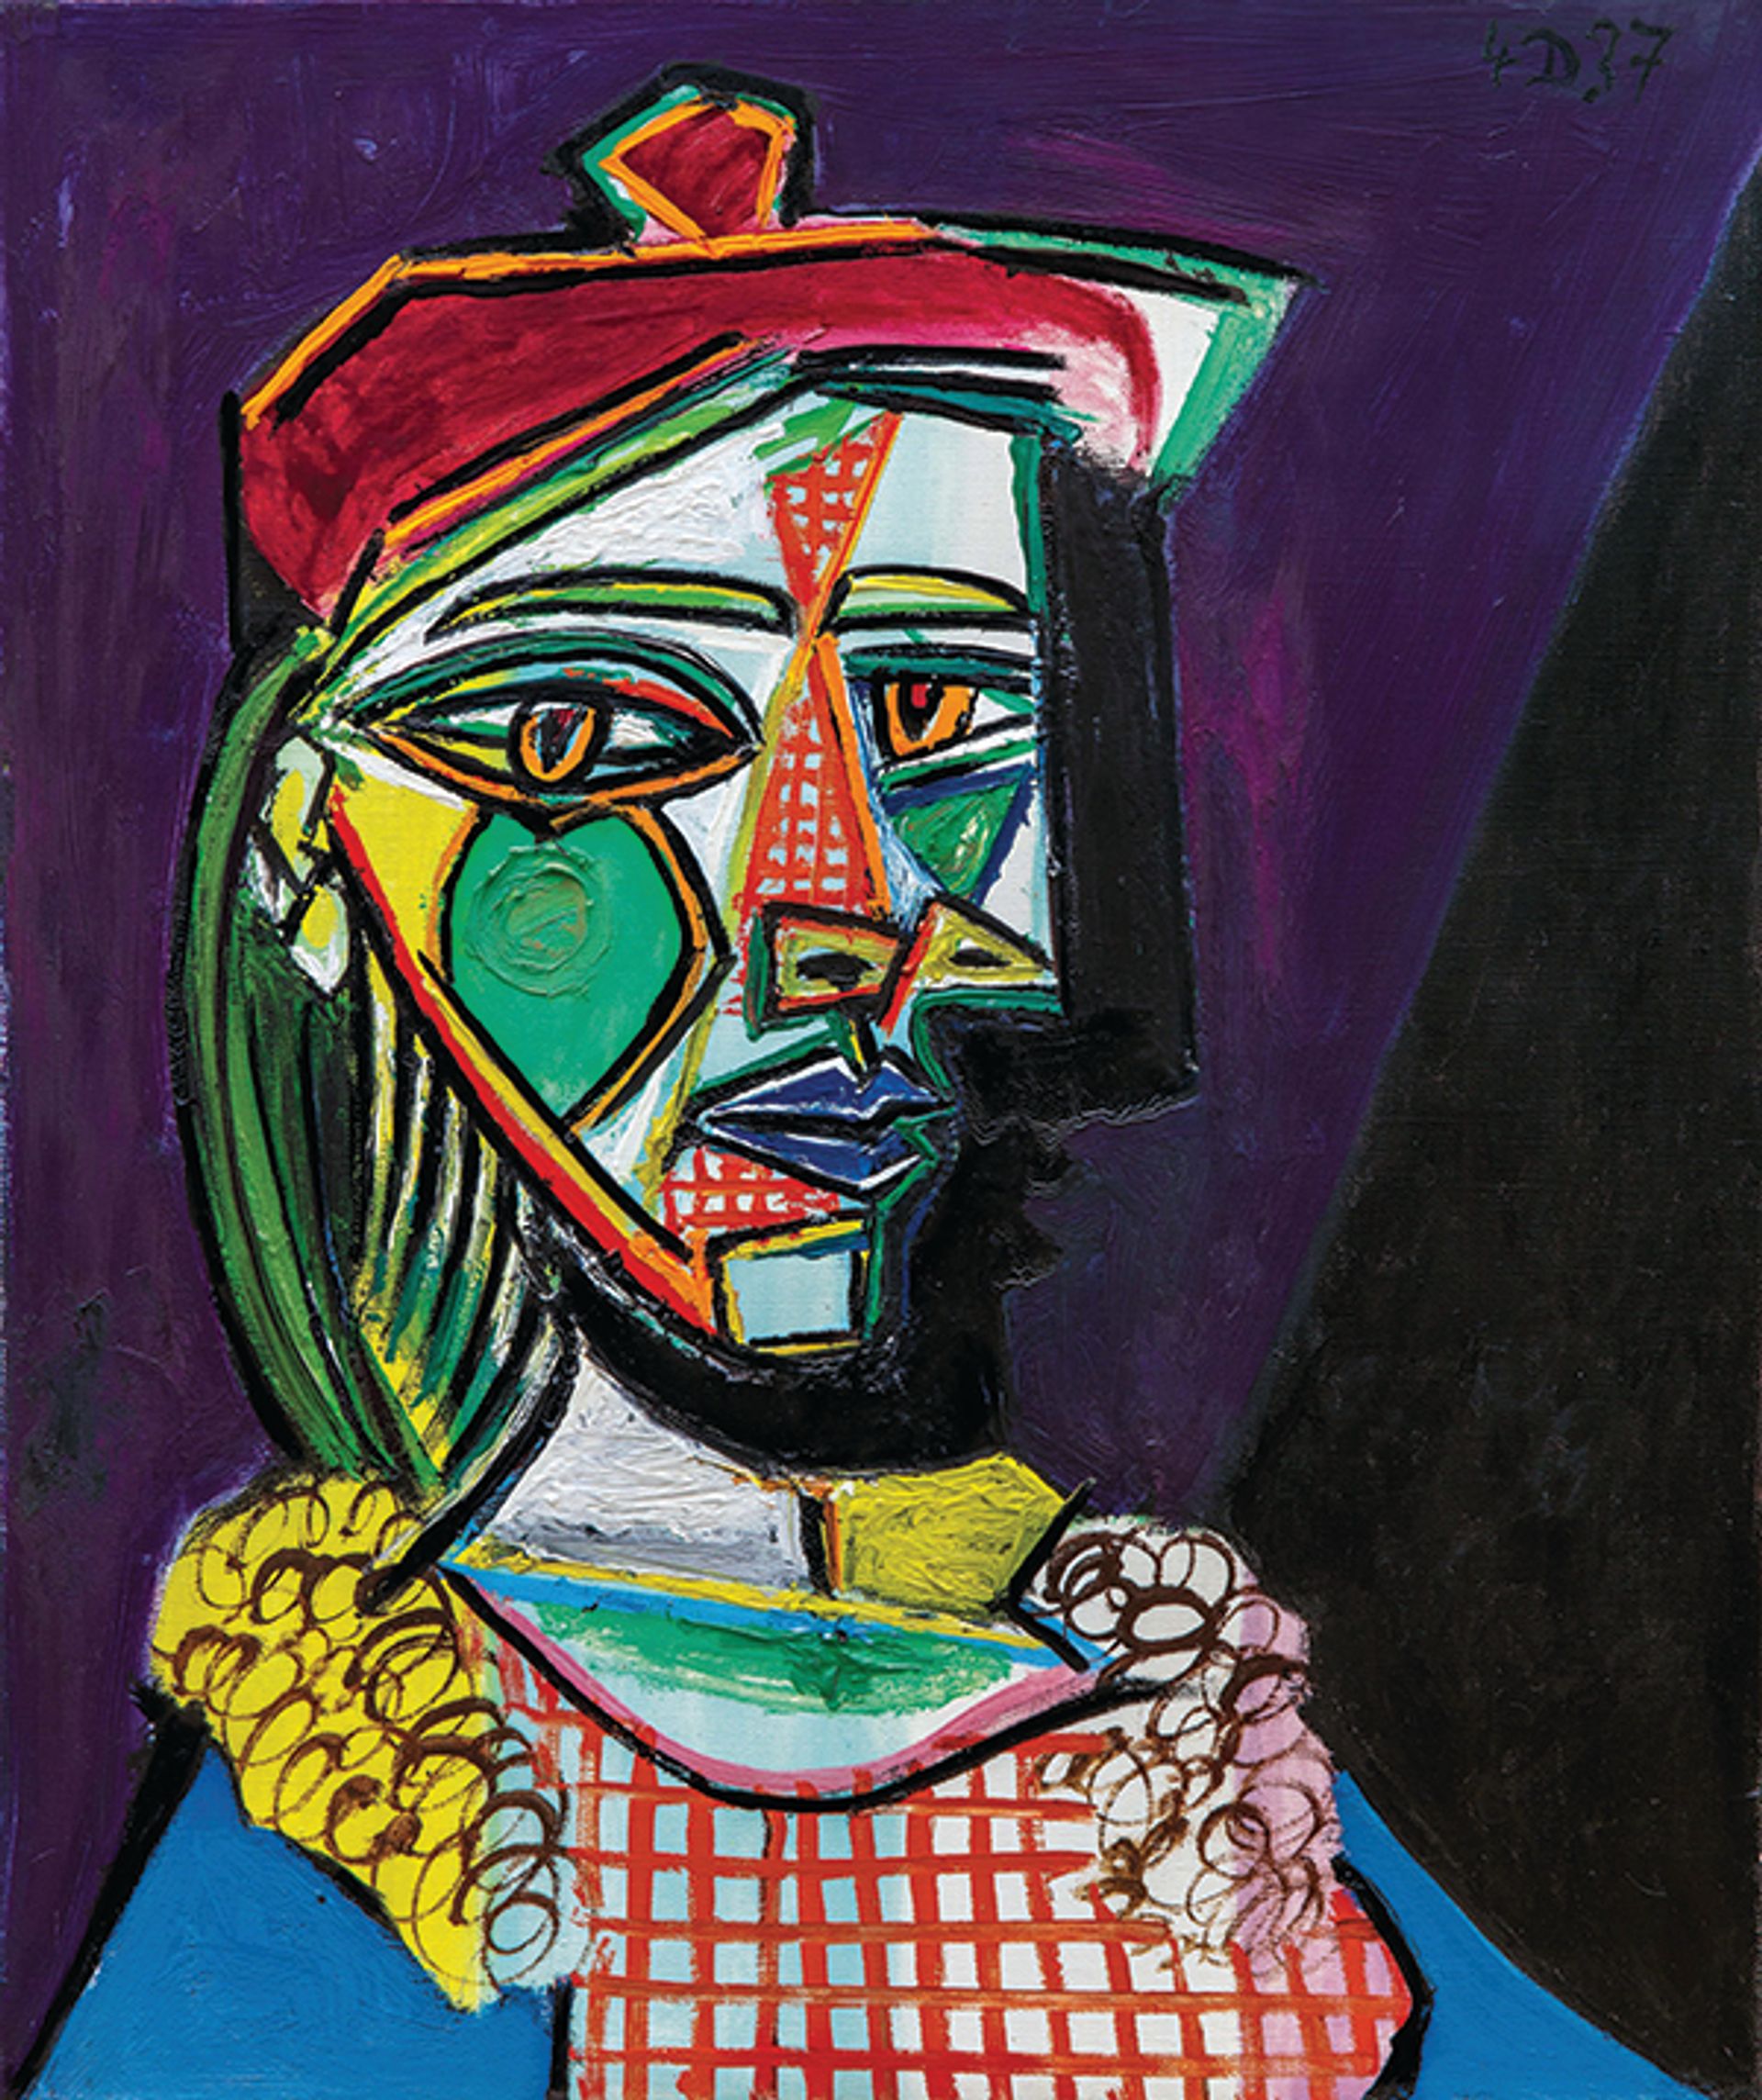 Pablo Picasso, Femme au beret et à la robe quadrille (Marie-Thérèse Walter), 1937 sold for £49.9m Sotheby's